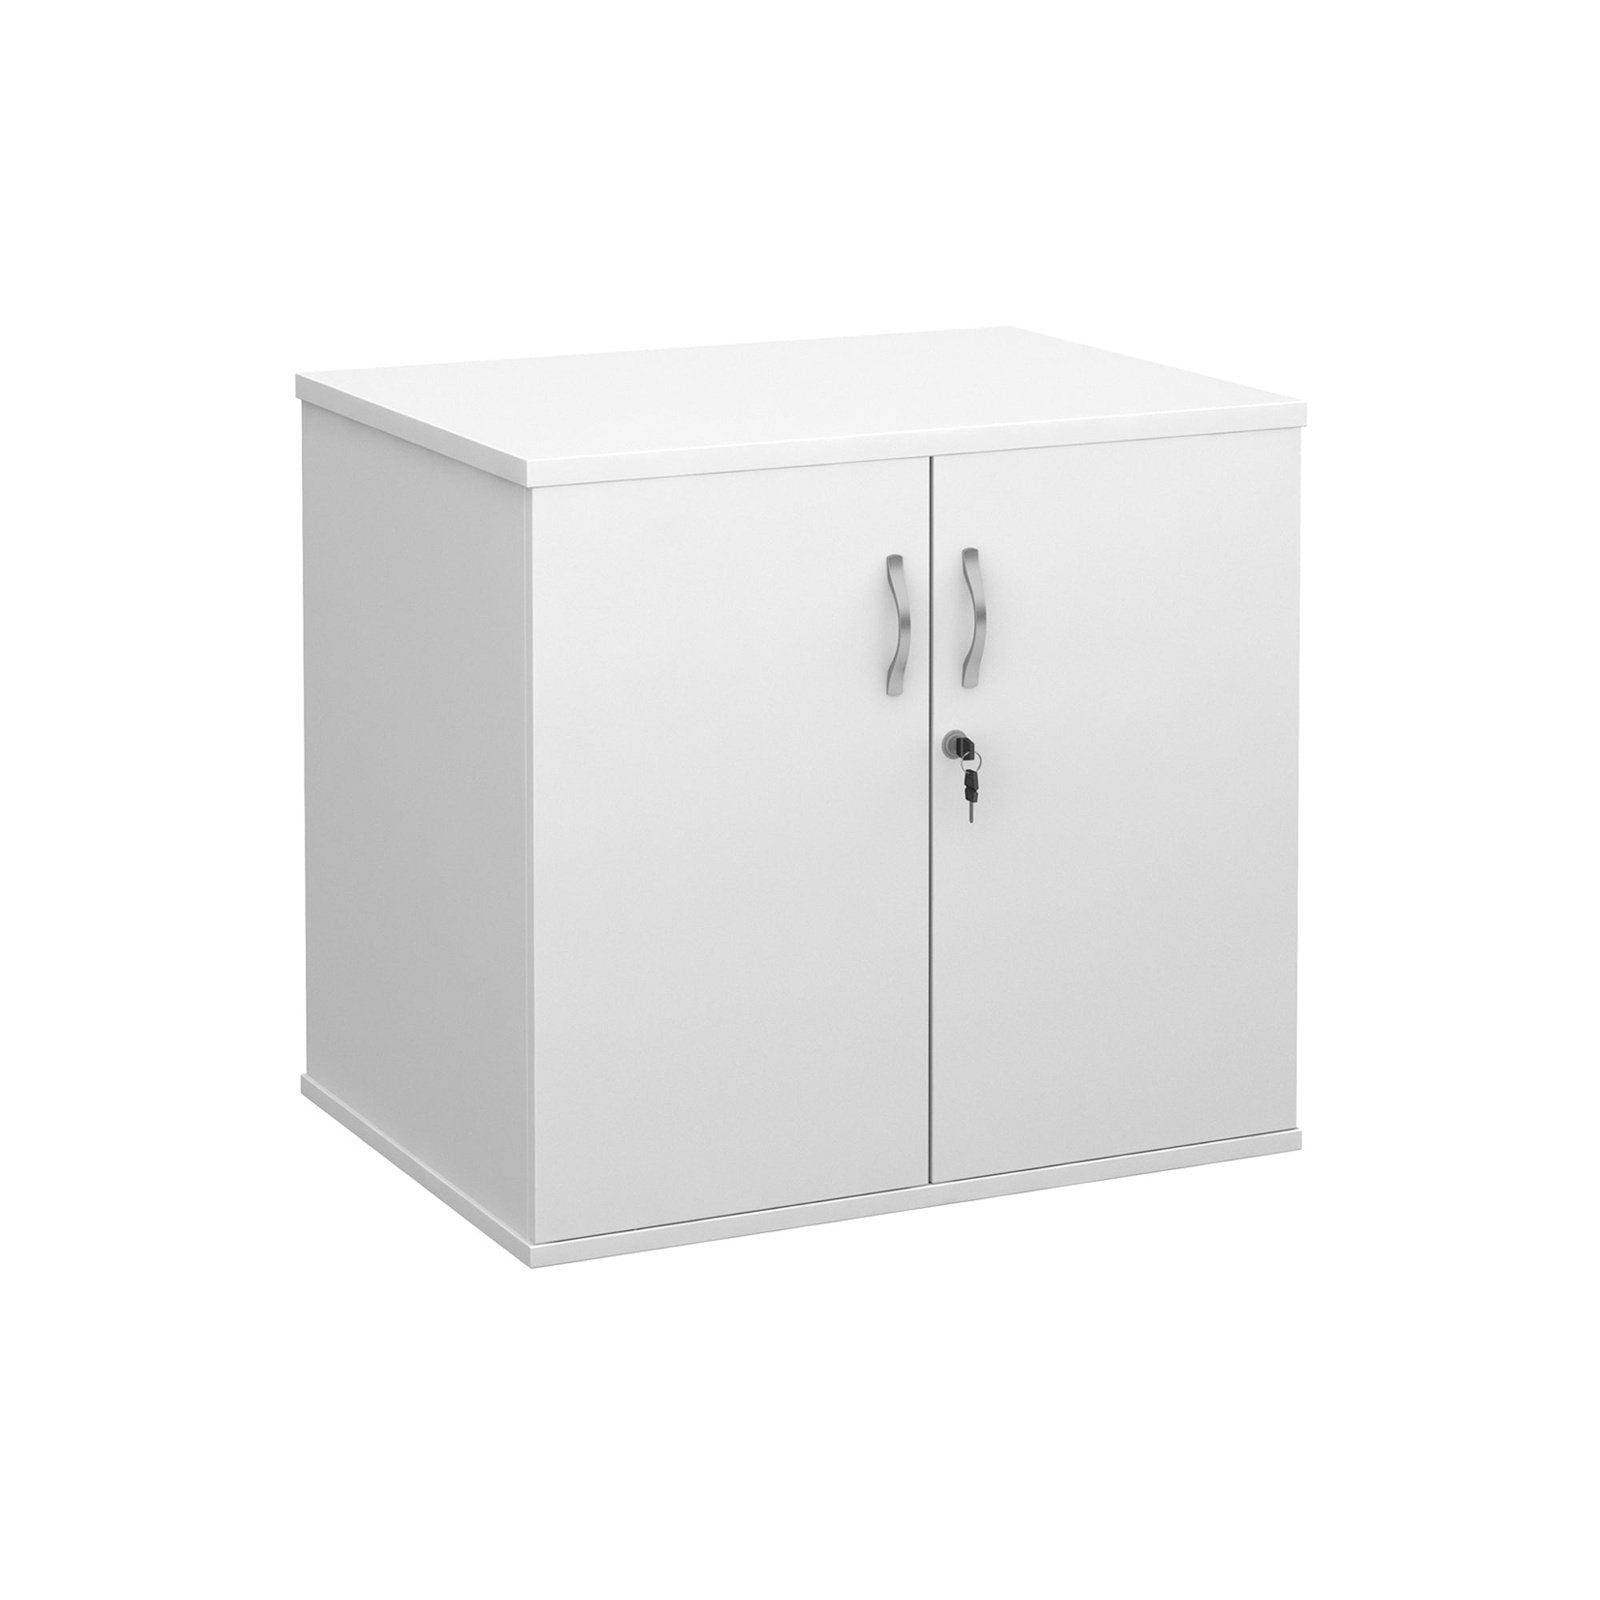 Deluxe double door desk high cupboard 600mm deep - Office Products Online